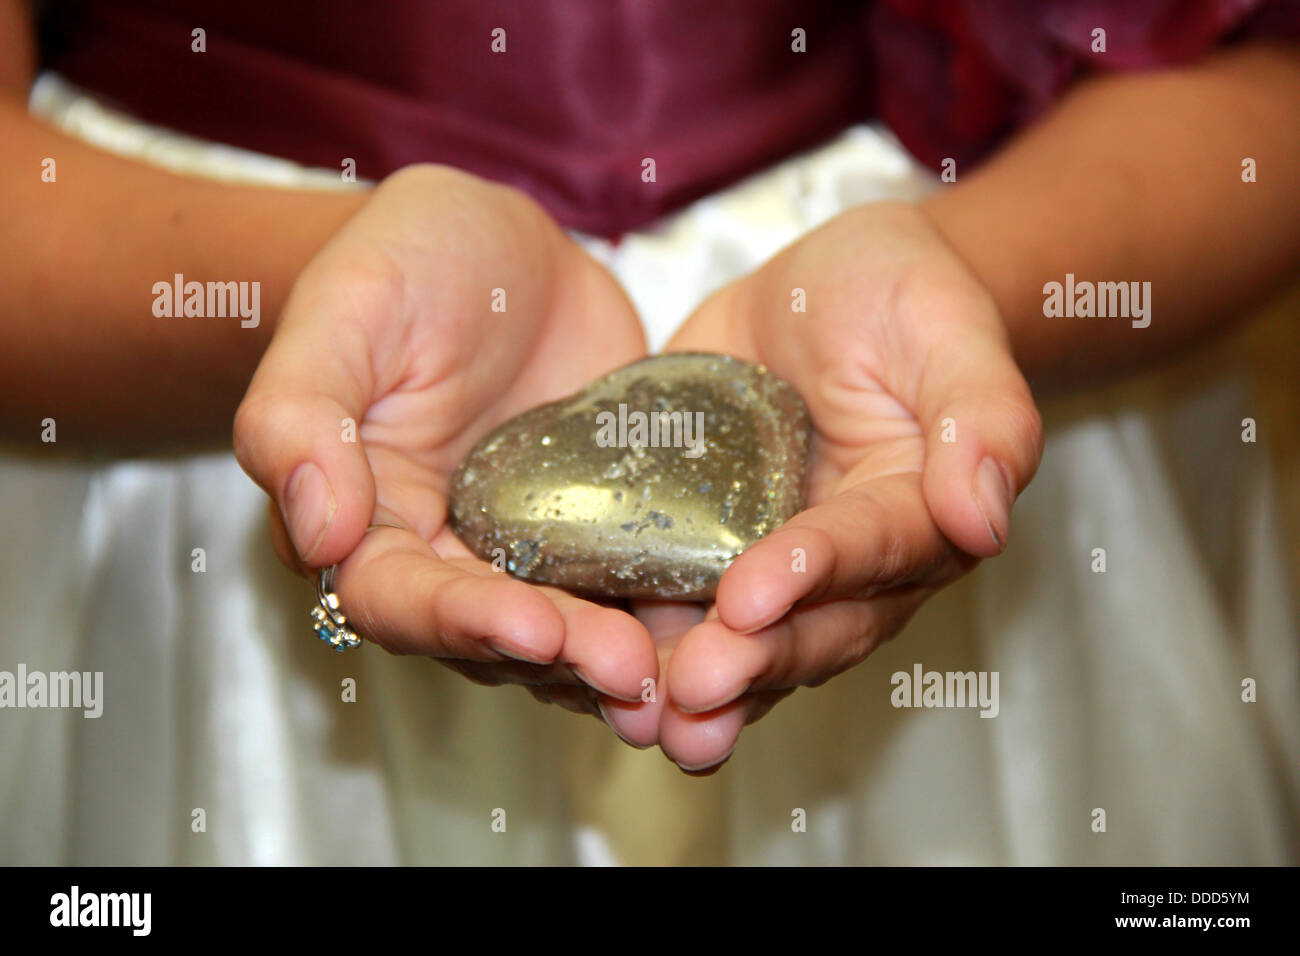 Junges Mädchen offenen Händen hielt Stein in der Form eines Herzens, in der Hoffnung, ihre Liebe zu Familie und Freunden zum Ausdruck bringen. Stockfoto